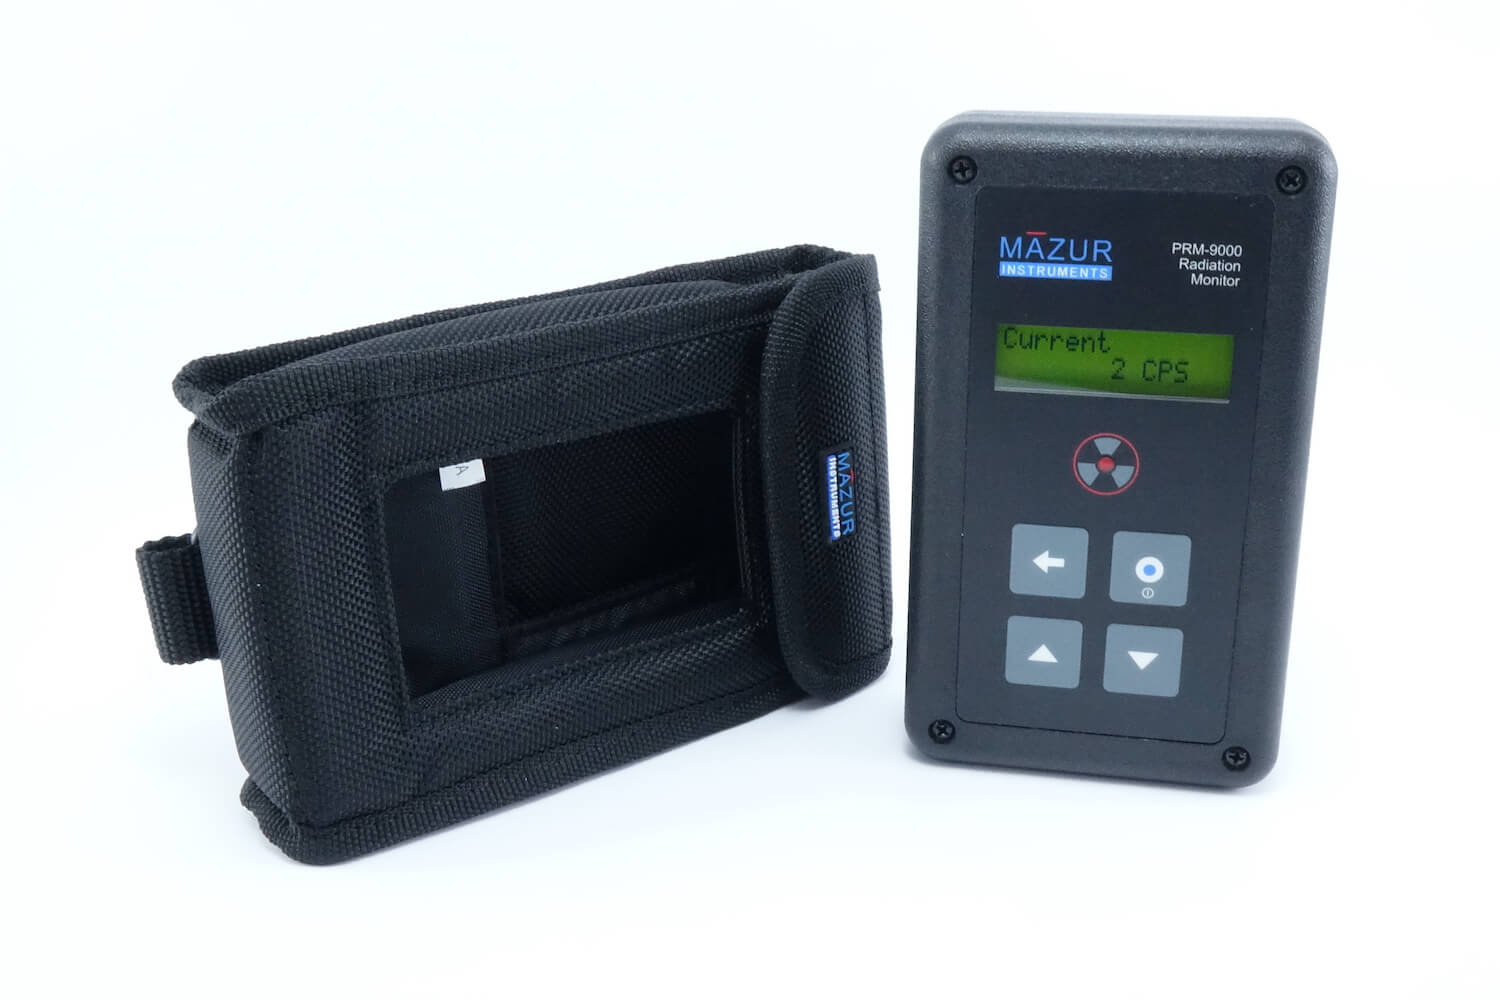 Geigerzähler PRM-9000 von Mazur inkl. Schutztasche